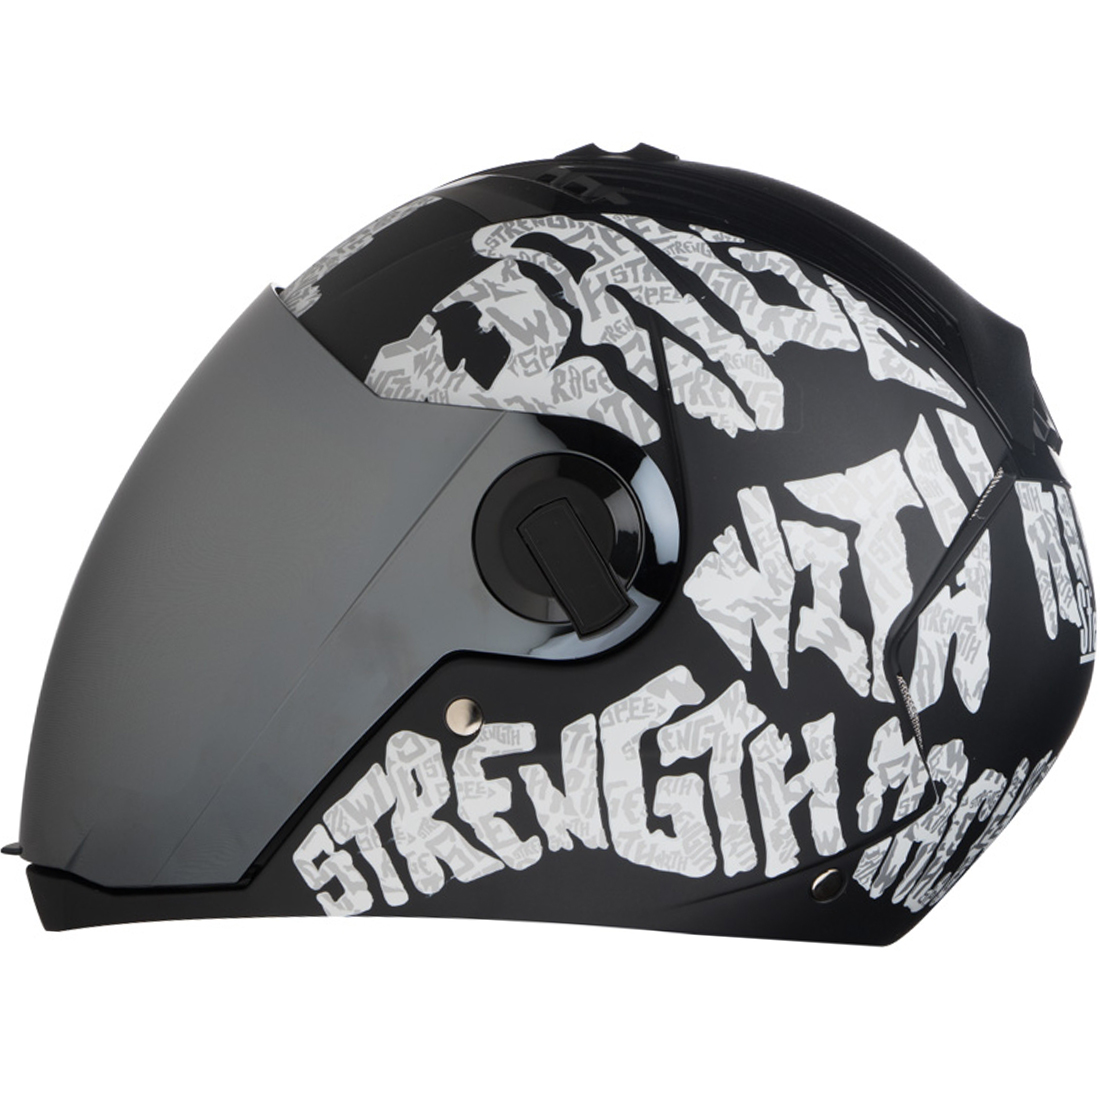 Steelbird SBA-2 Strength Stylish Bike Full Face Helmet (Matt Black White With Chrome Silver Visor)